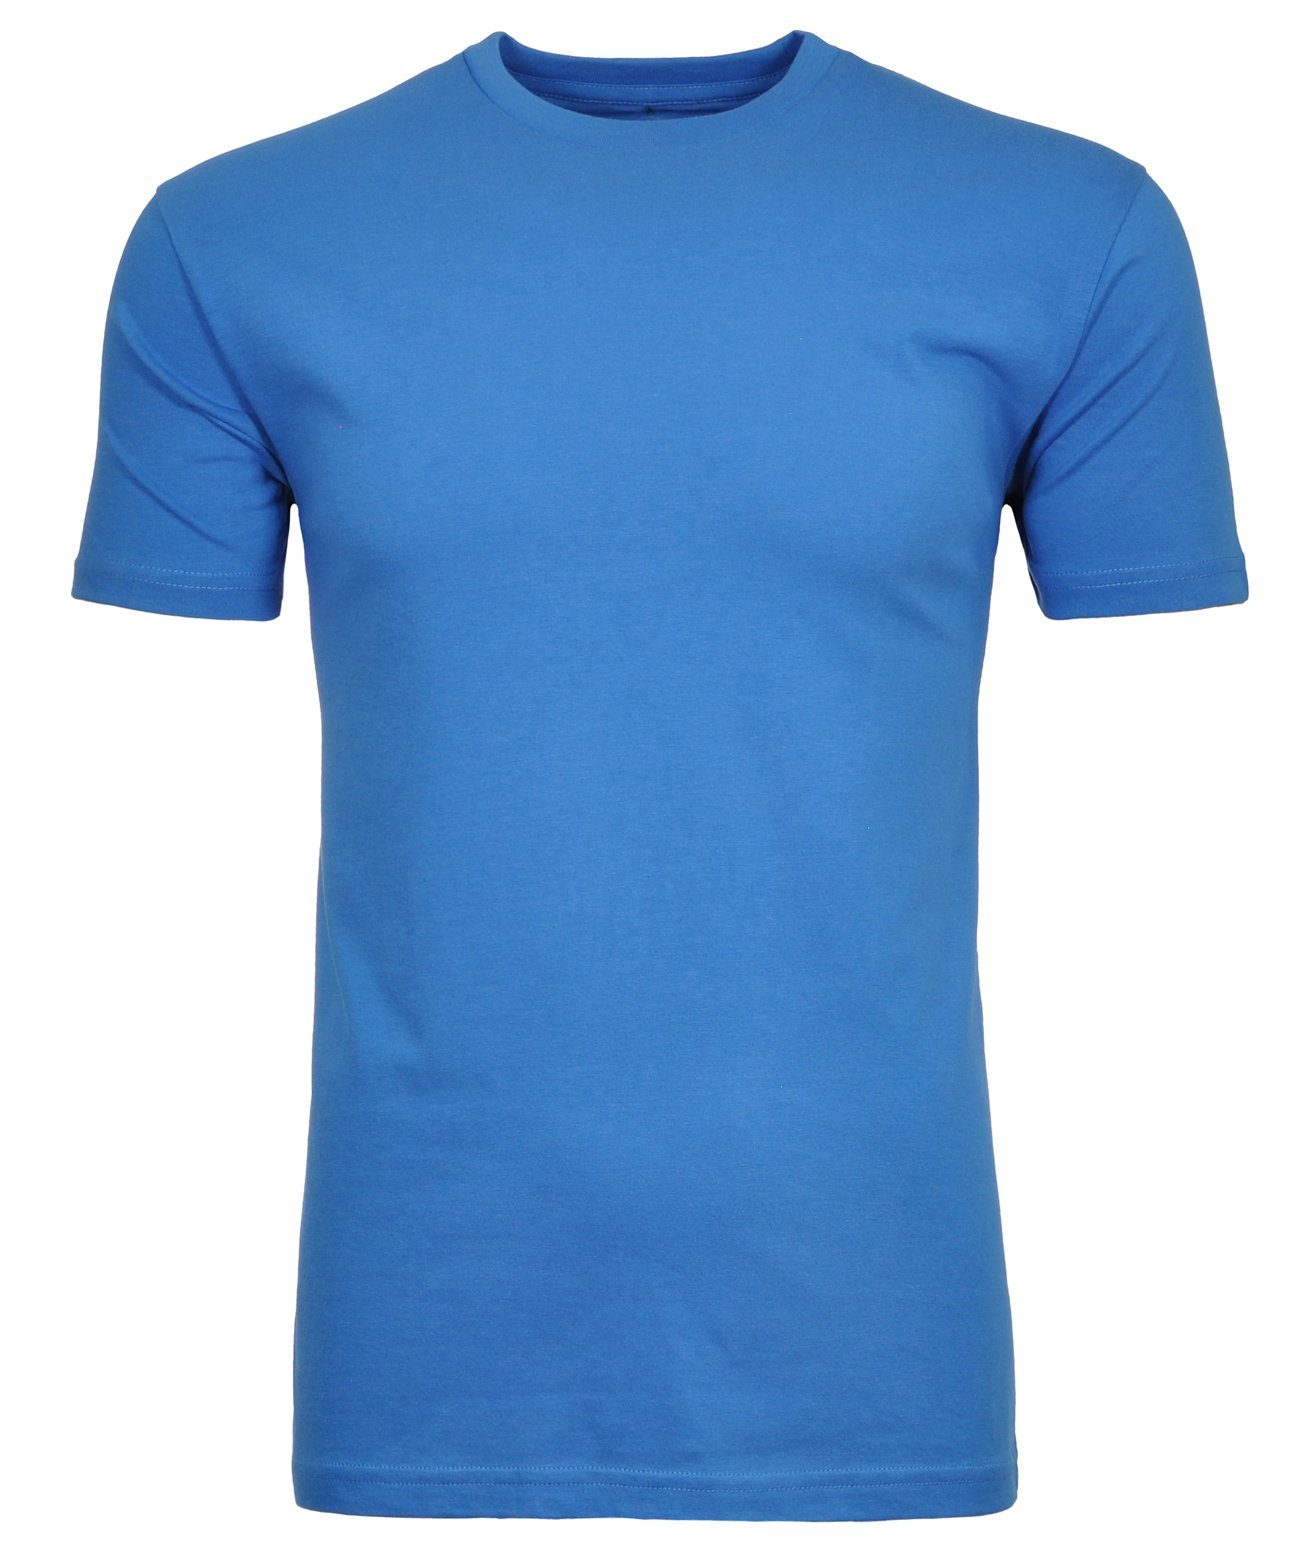 RAGMAN Longshirt Blau-718